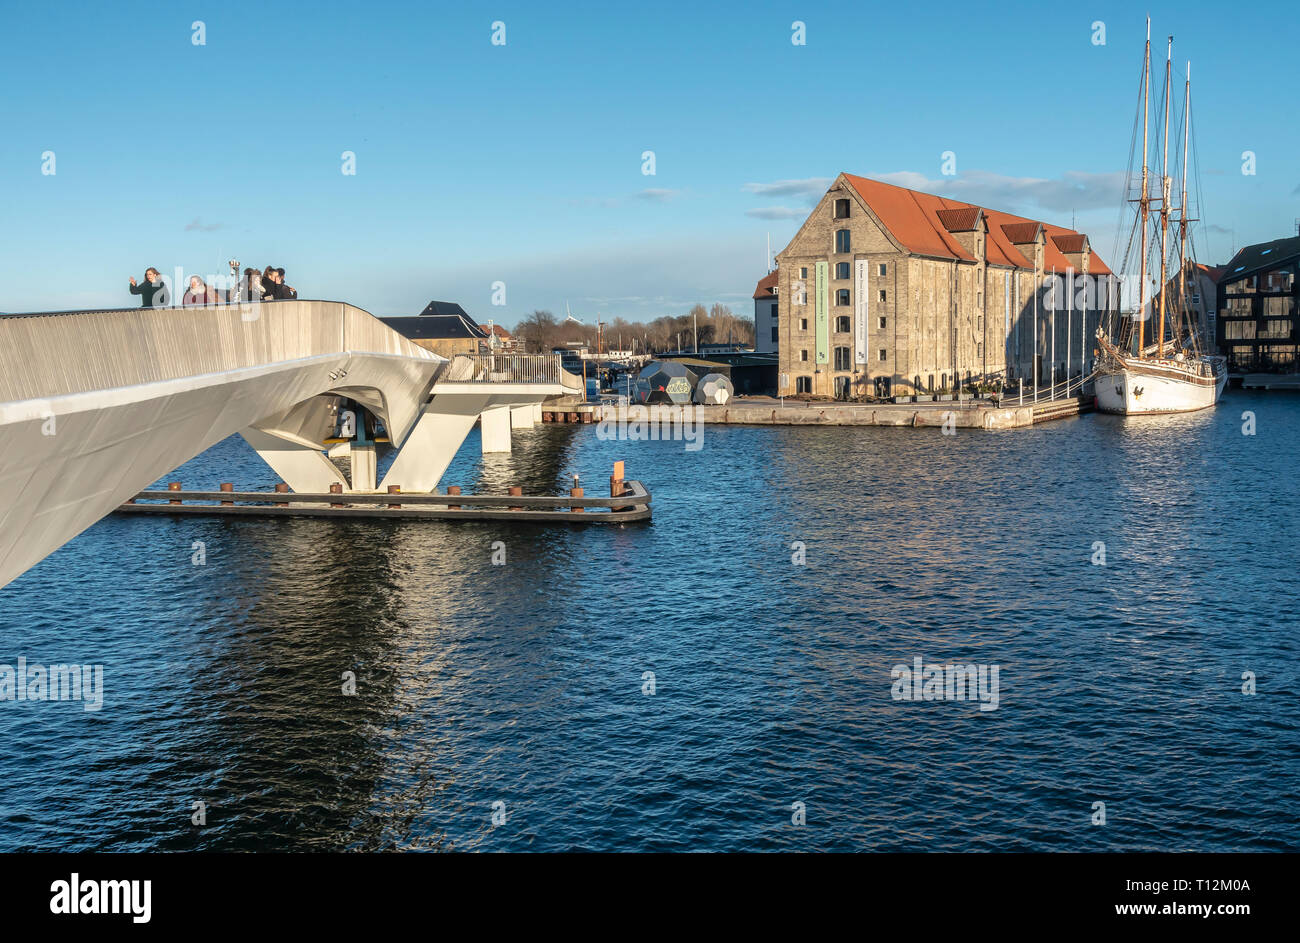 Inderhavnsbroen cycle & pedestrian bridge linking Nyhavn with Christianshavn in Copenhagen Denmark Europe Stock Photo